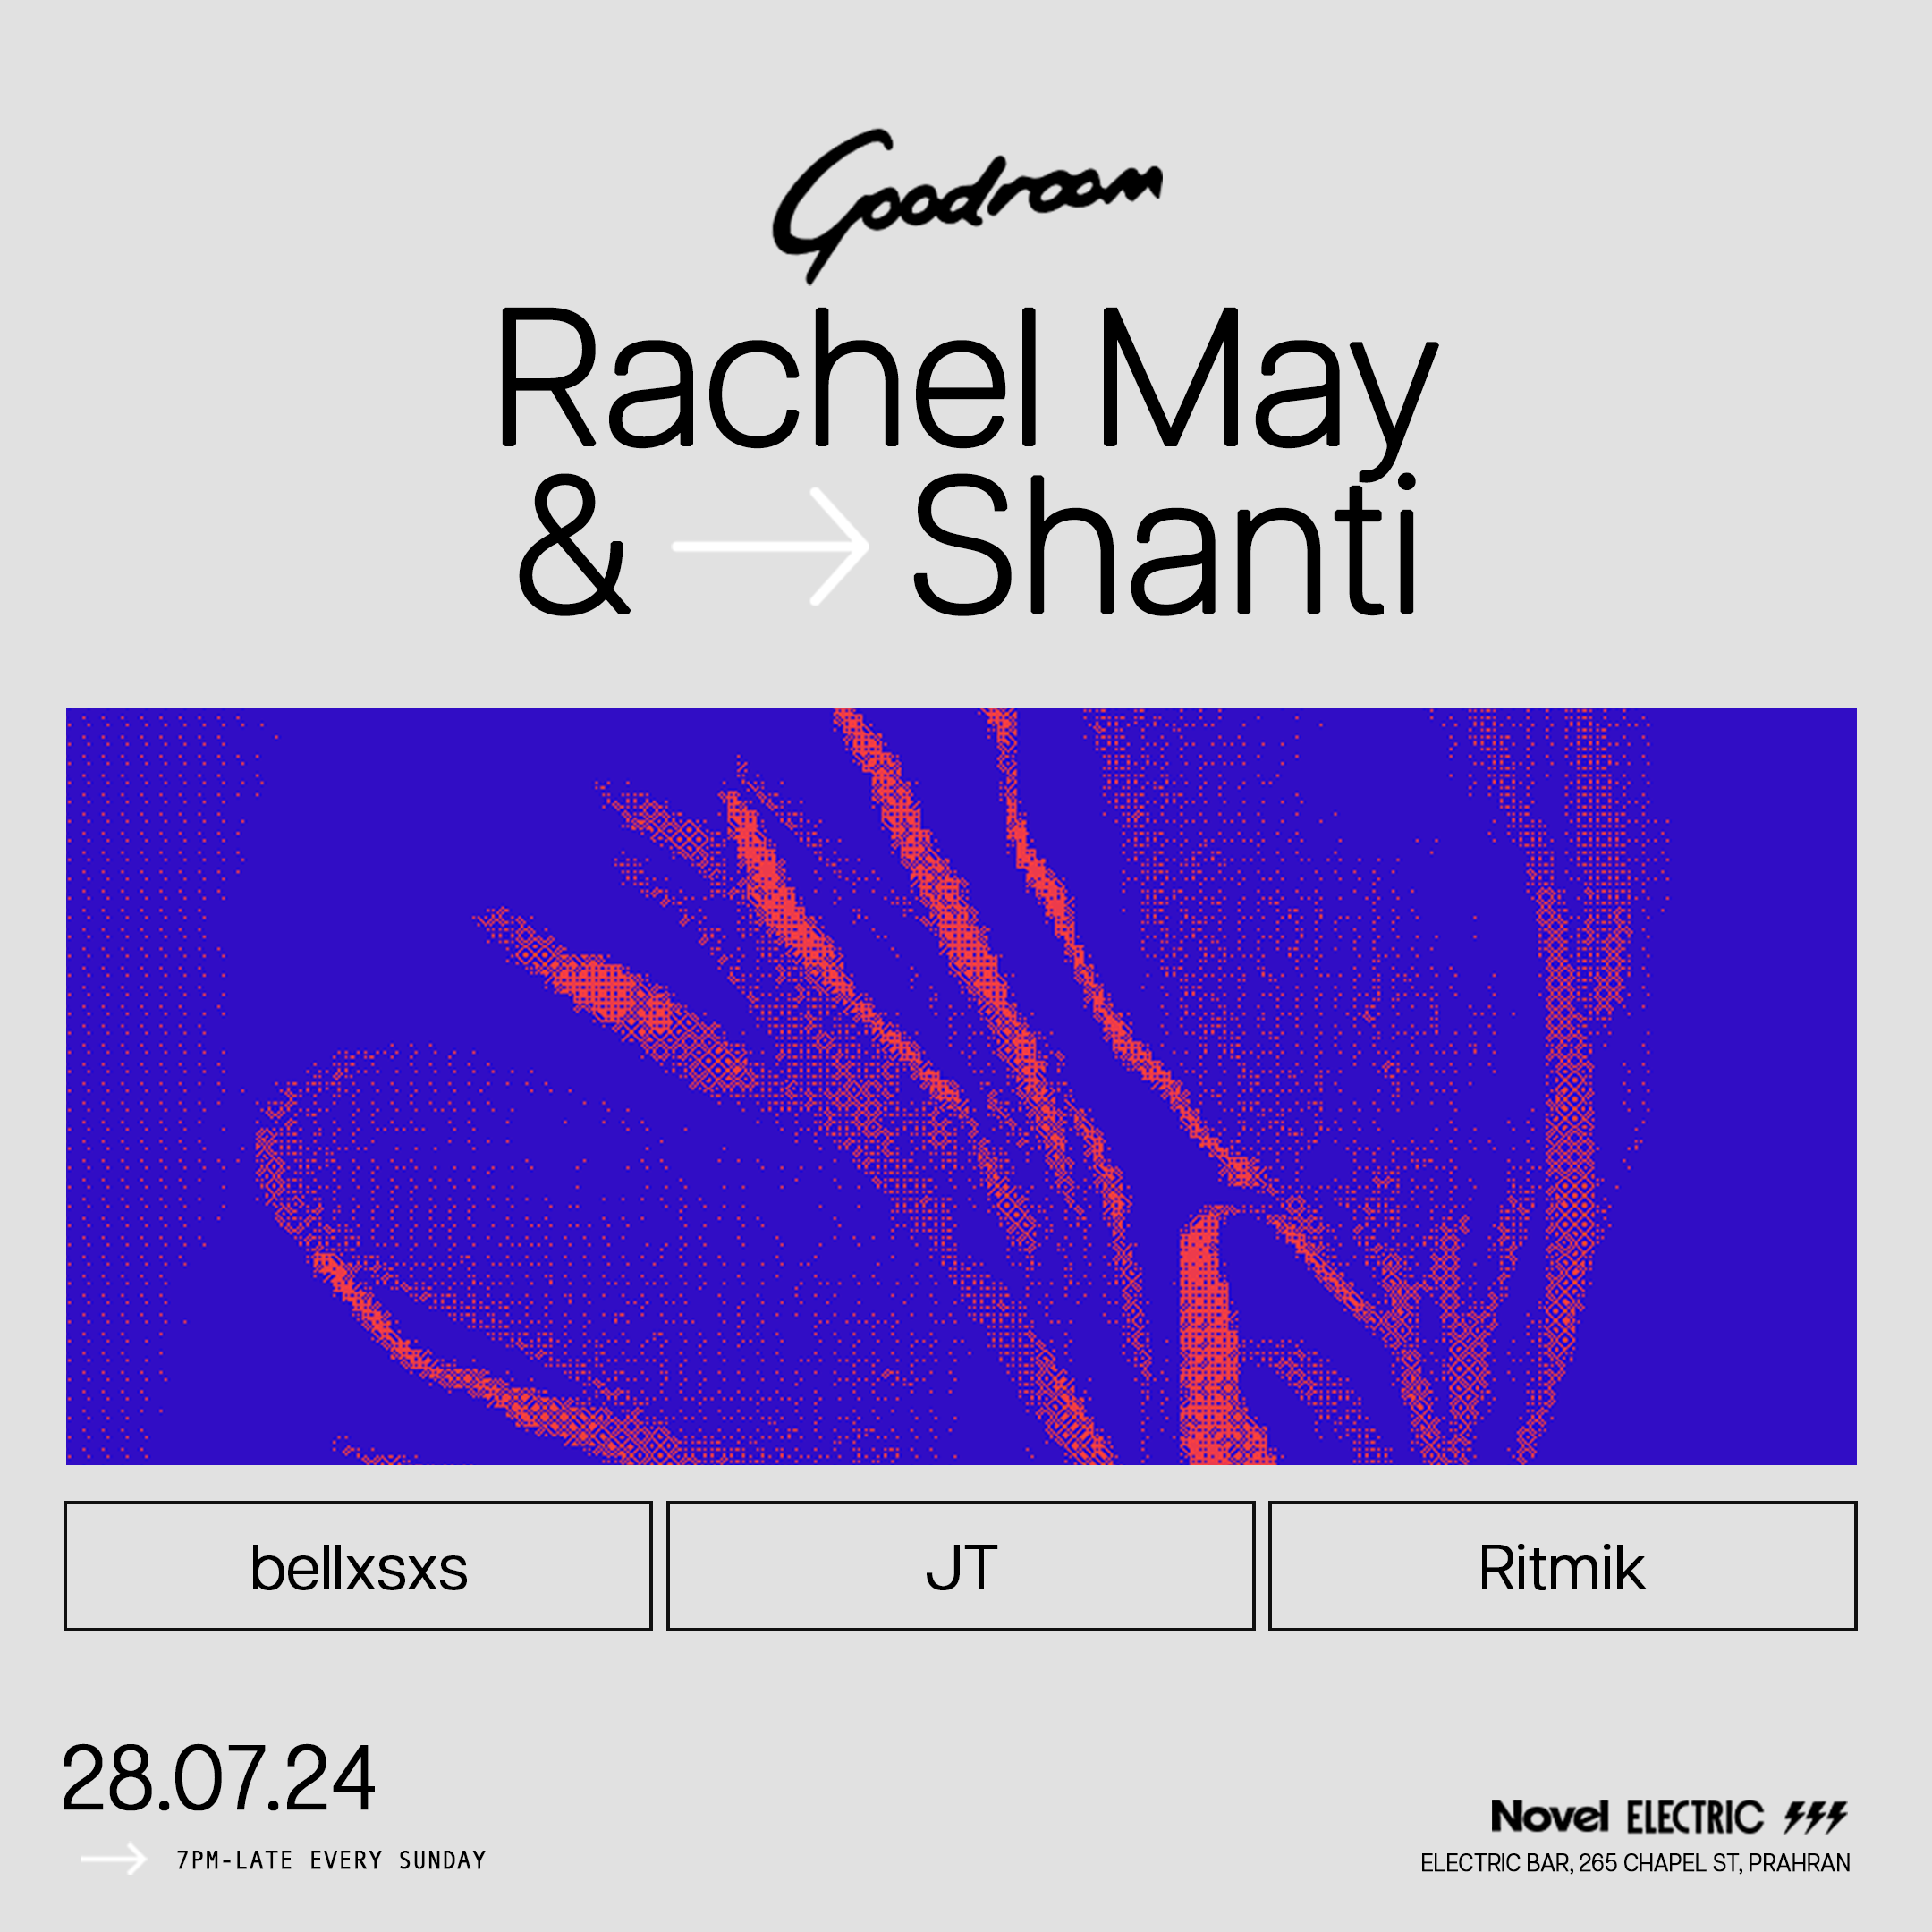 Goodroom with Rachel May + Shanti